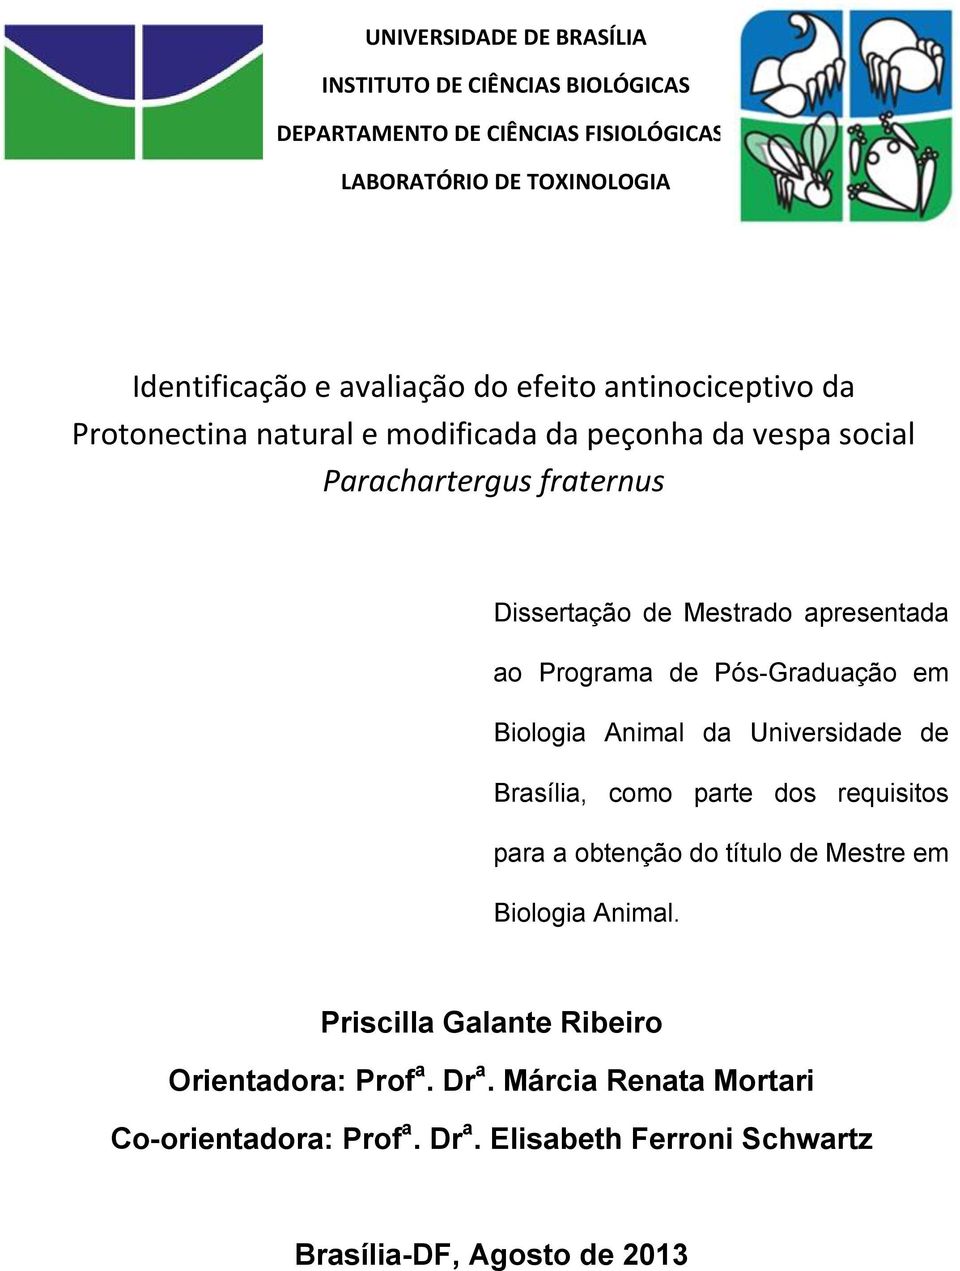 Programa de Pós-Graduação em Biologia Animal da Universidade de Brasília, como parte dos requisitos para a obtenção do título de Mestre em Biologia Animal.